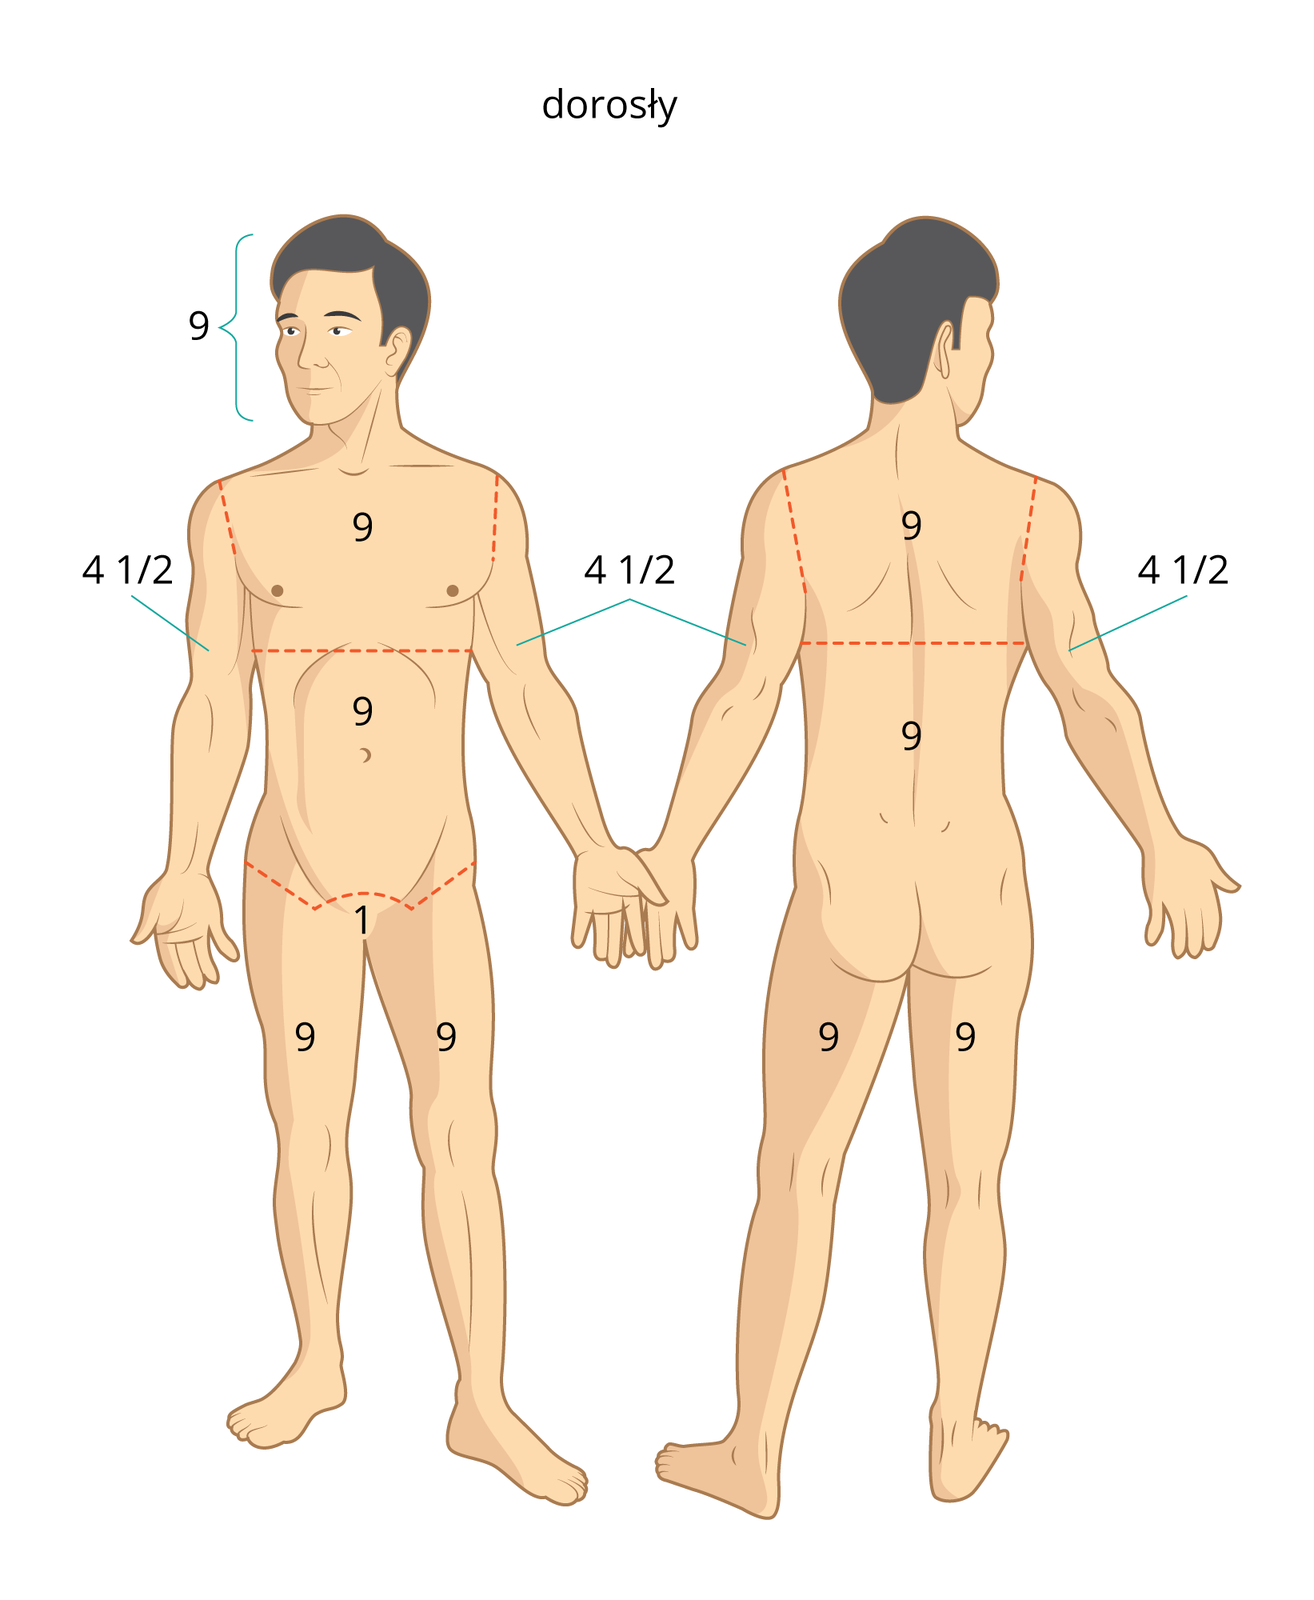 Galeria nr 2 składa się z dwóch prostokątnych ilustracji ułożonych obok siebie. Na każdej ilustracji znajduje się stojący mężczyzna bez ubrania. Ilustracja 1, po lewej, mężczyzna zwrócony przodem do obserwatora. Po prawej, ten sam mężczyzna stojący plecami do obserwatora. Liczba 9 jest umieszczona na: głowie, klatce piersiowej, brzuchu, udach, łopatkach i plecach. Liczba 1 umieszczona jest w kroczu. Liczba 4 ½ powyżej łokci.